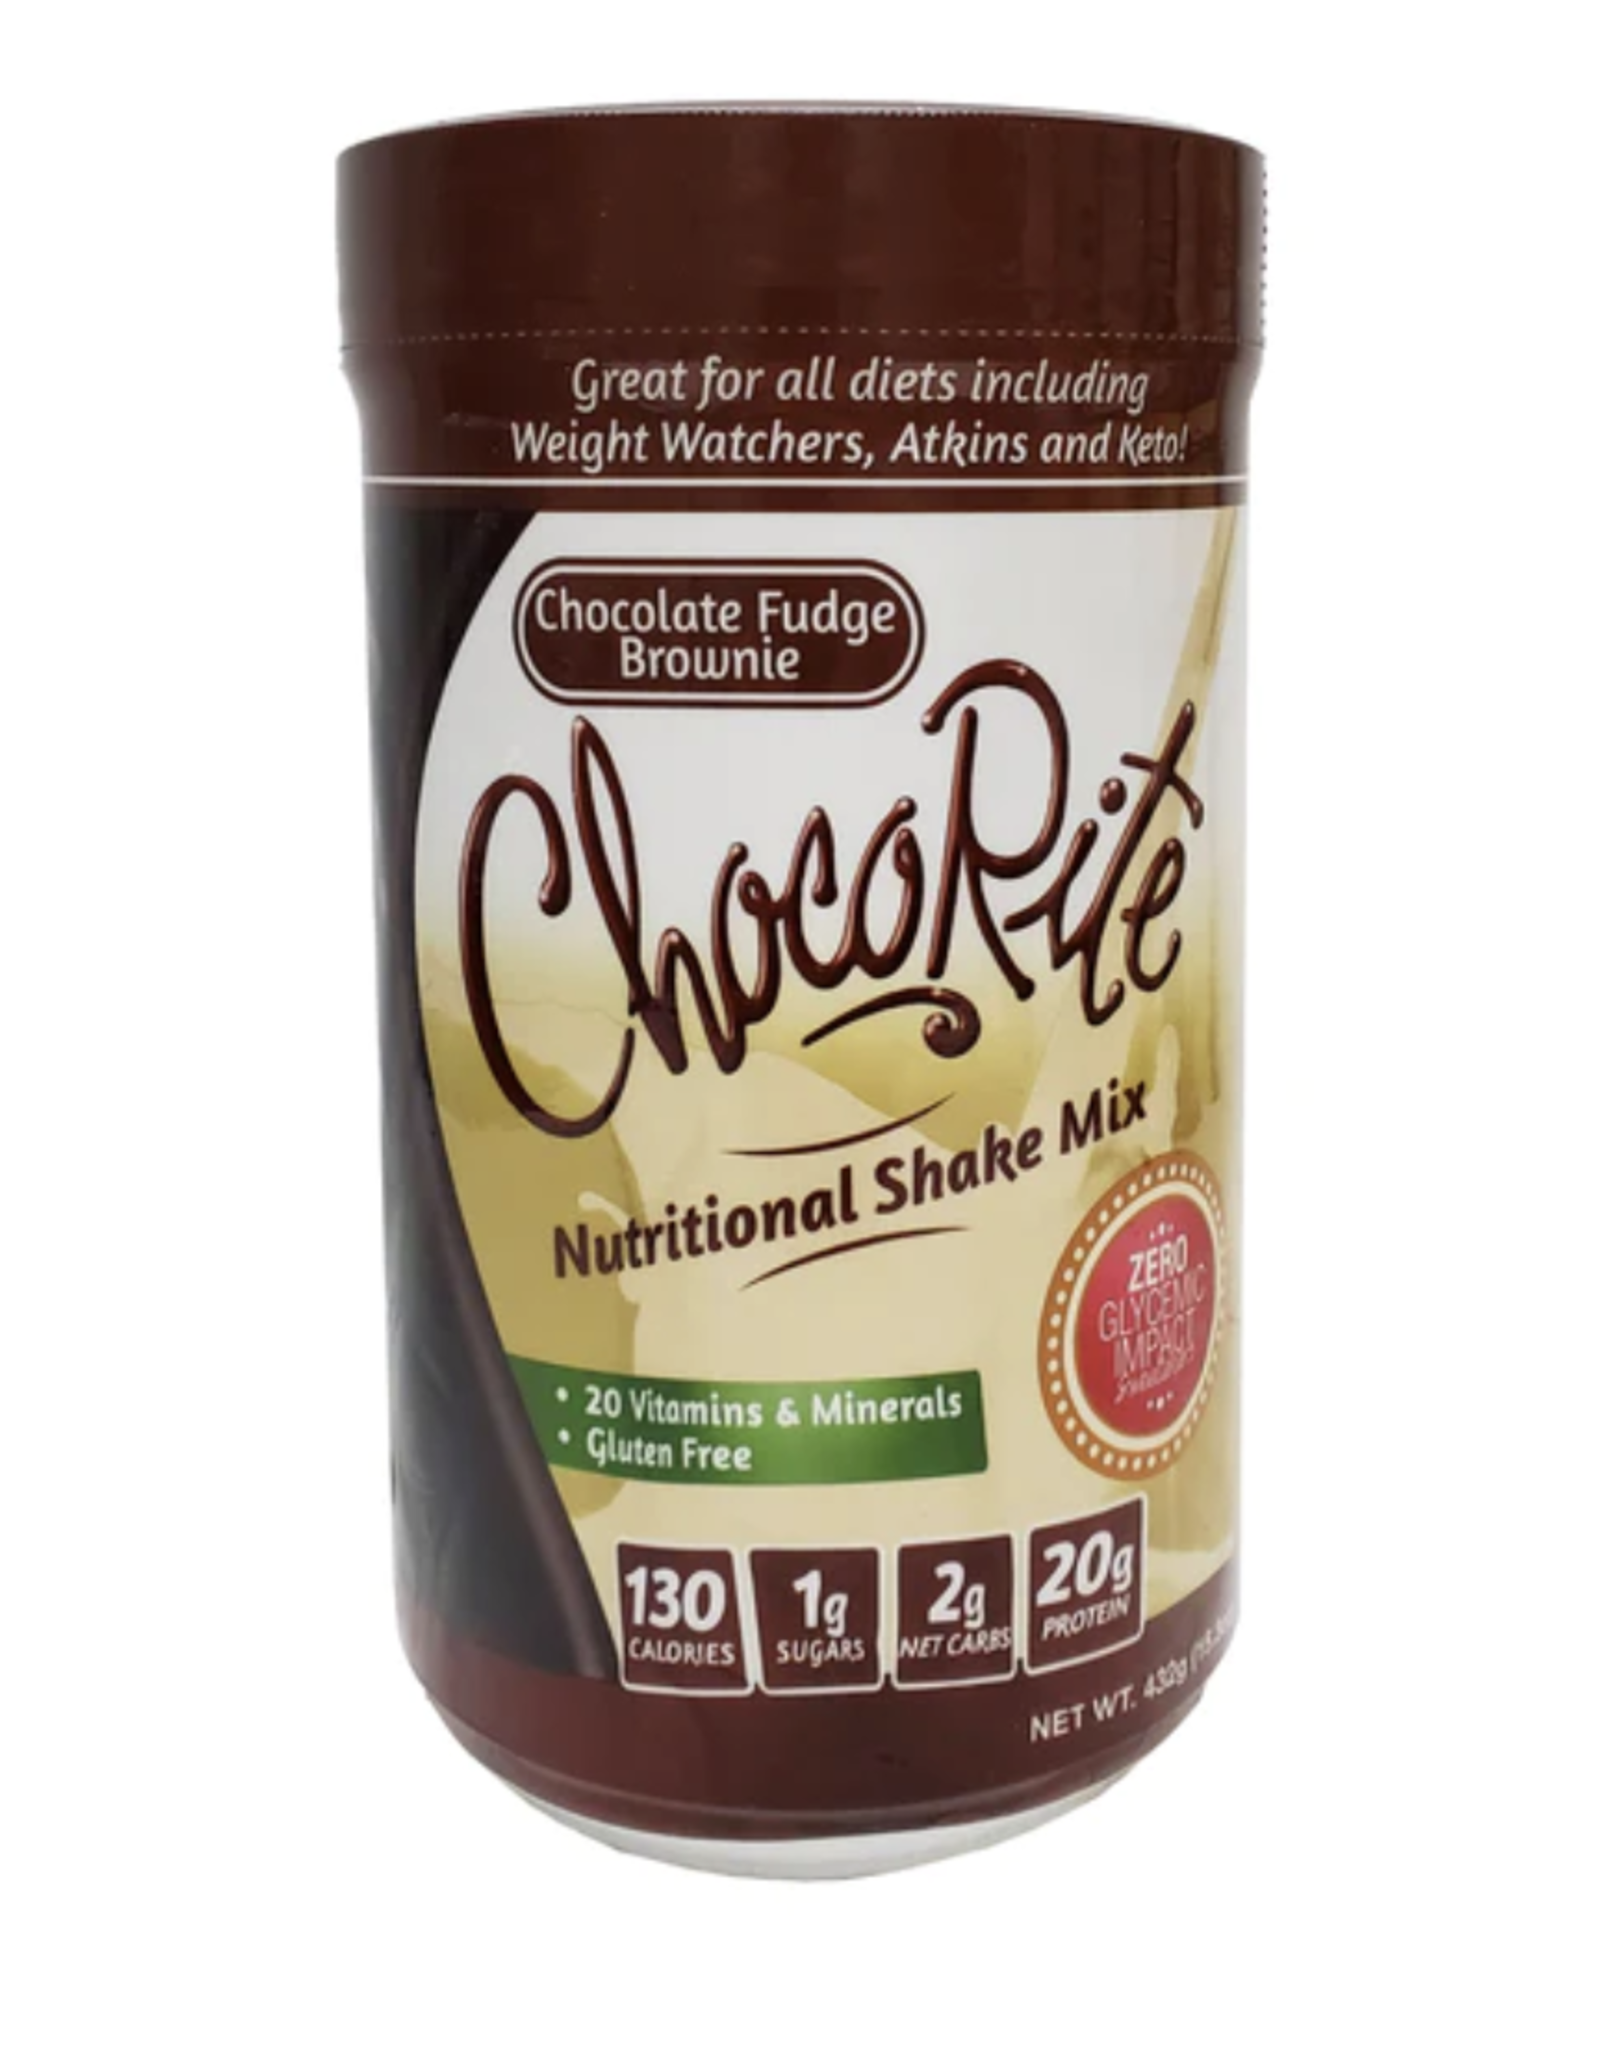 ChocoRite ChocoRite Shake Choc Fdg Brownie Protein